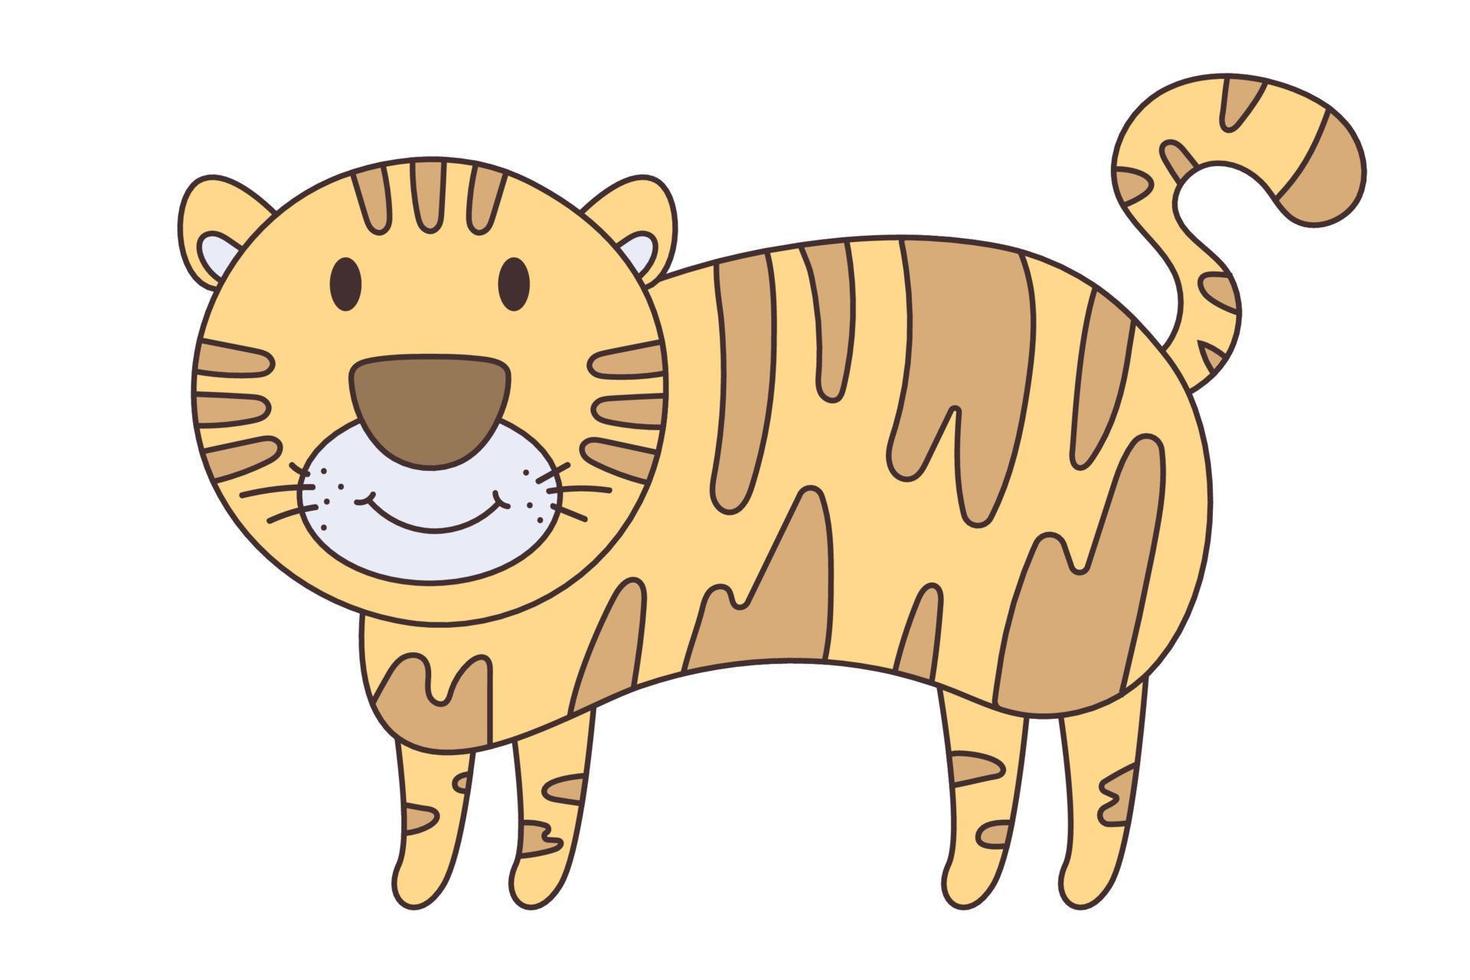 Vektor-Cartoon-Tiger. afrikanisches Tier. lustiger freundlicher Tiger. lustiger süßer Tiger. Entzückendes kleines afrikanisches Tier für Modedruck, Kinderbekleidung, Kindergarten, Poster, Einladung, Grußkartendesign vektor